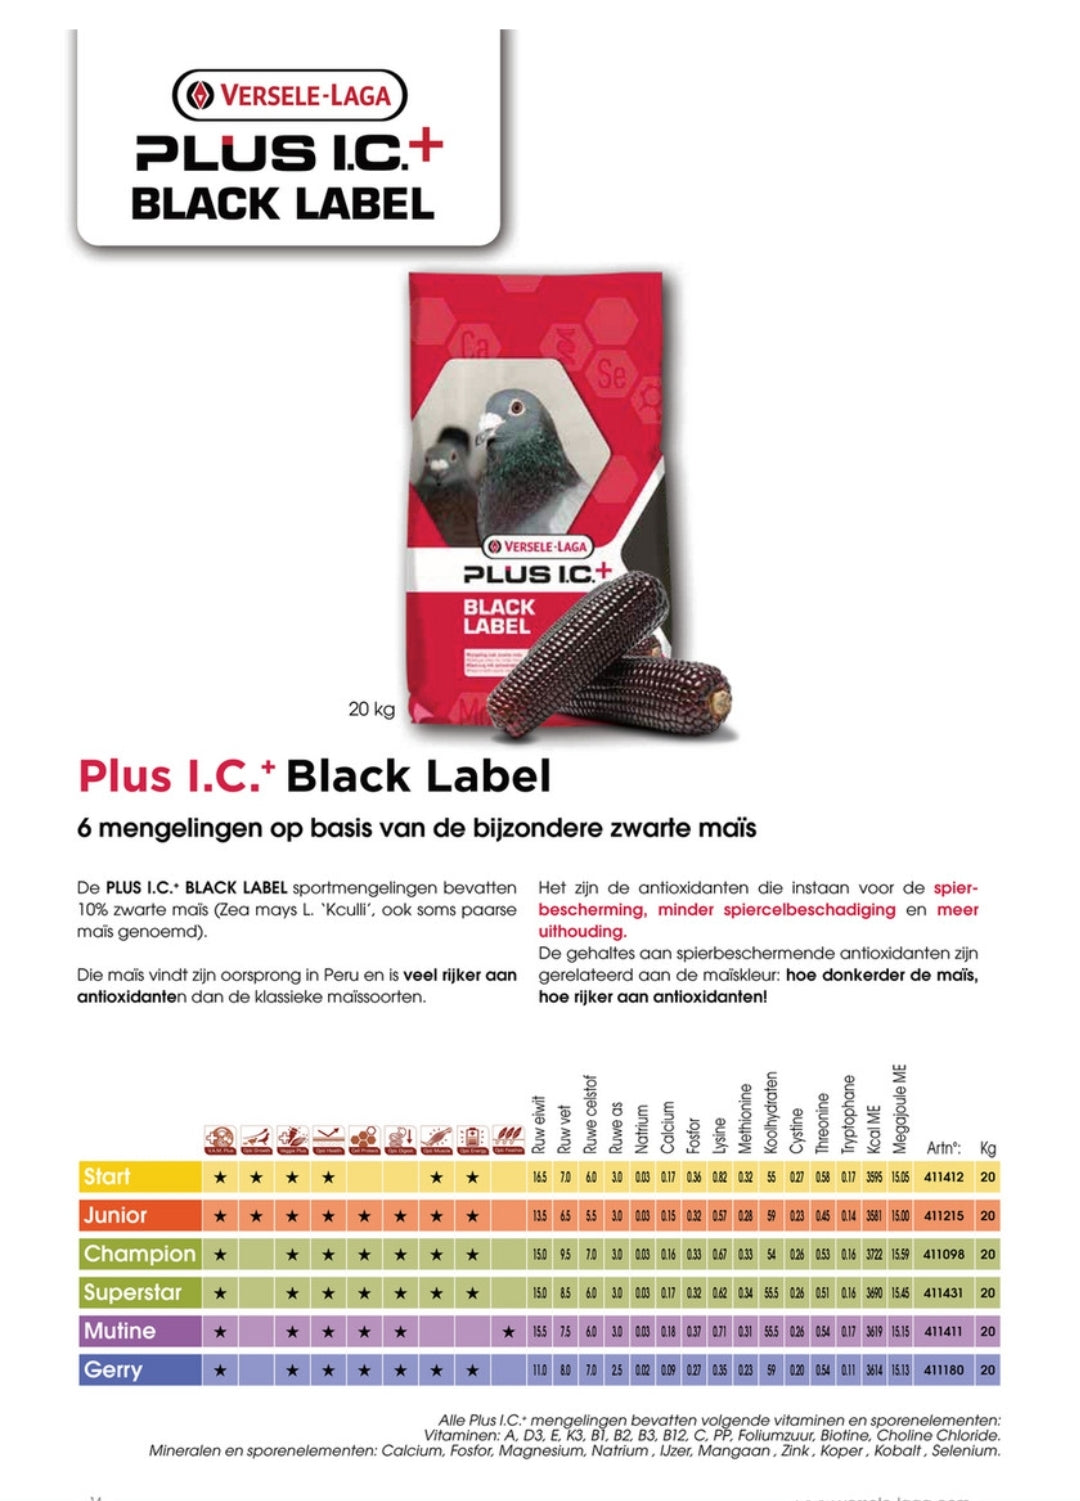 Zwarte label superster 20kg - Versele Laga